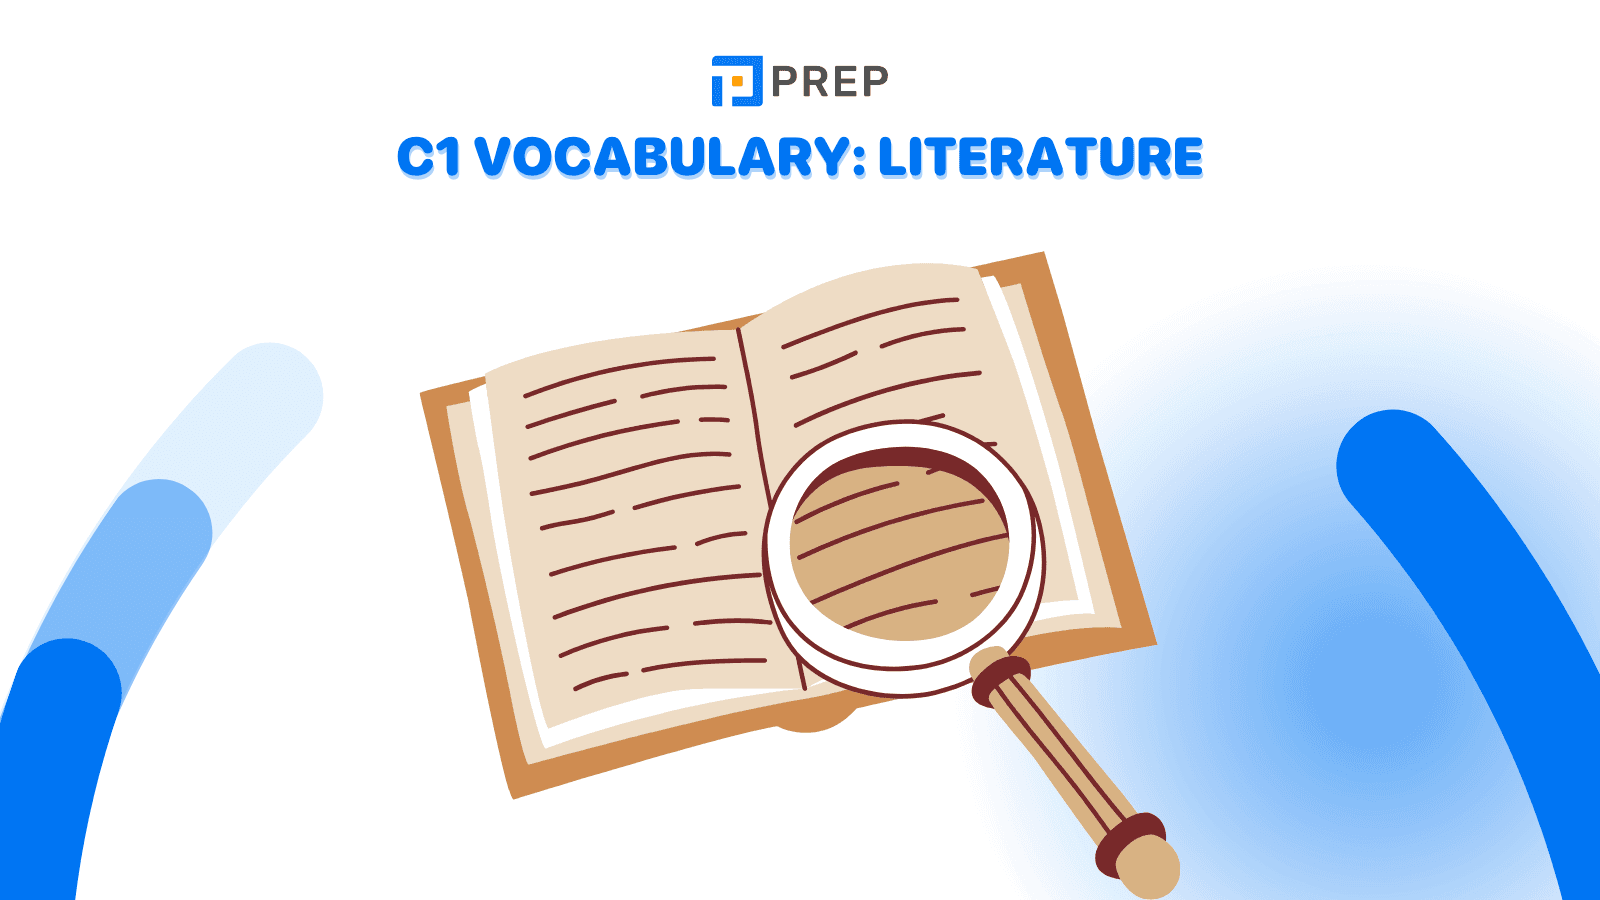 C1 vocabulary: Literature